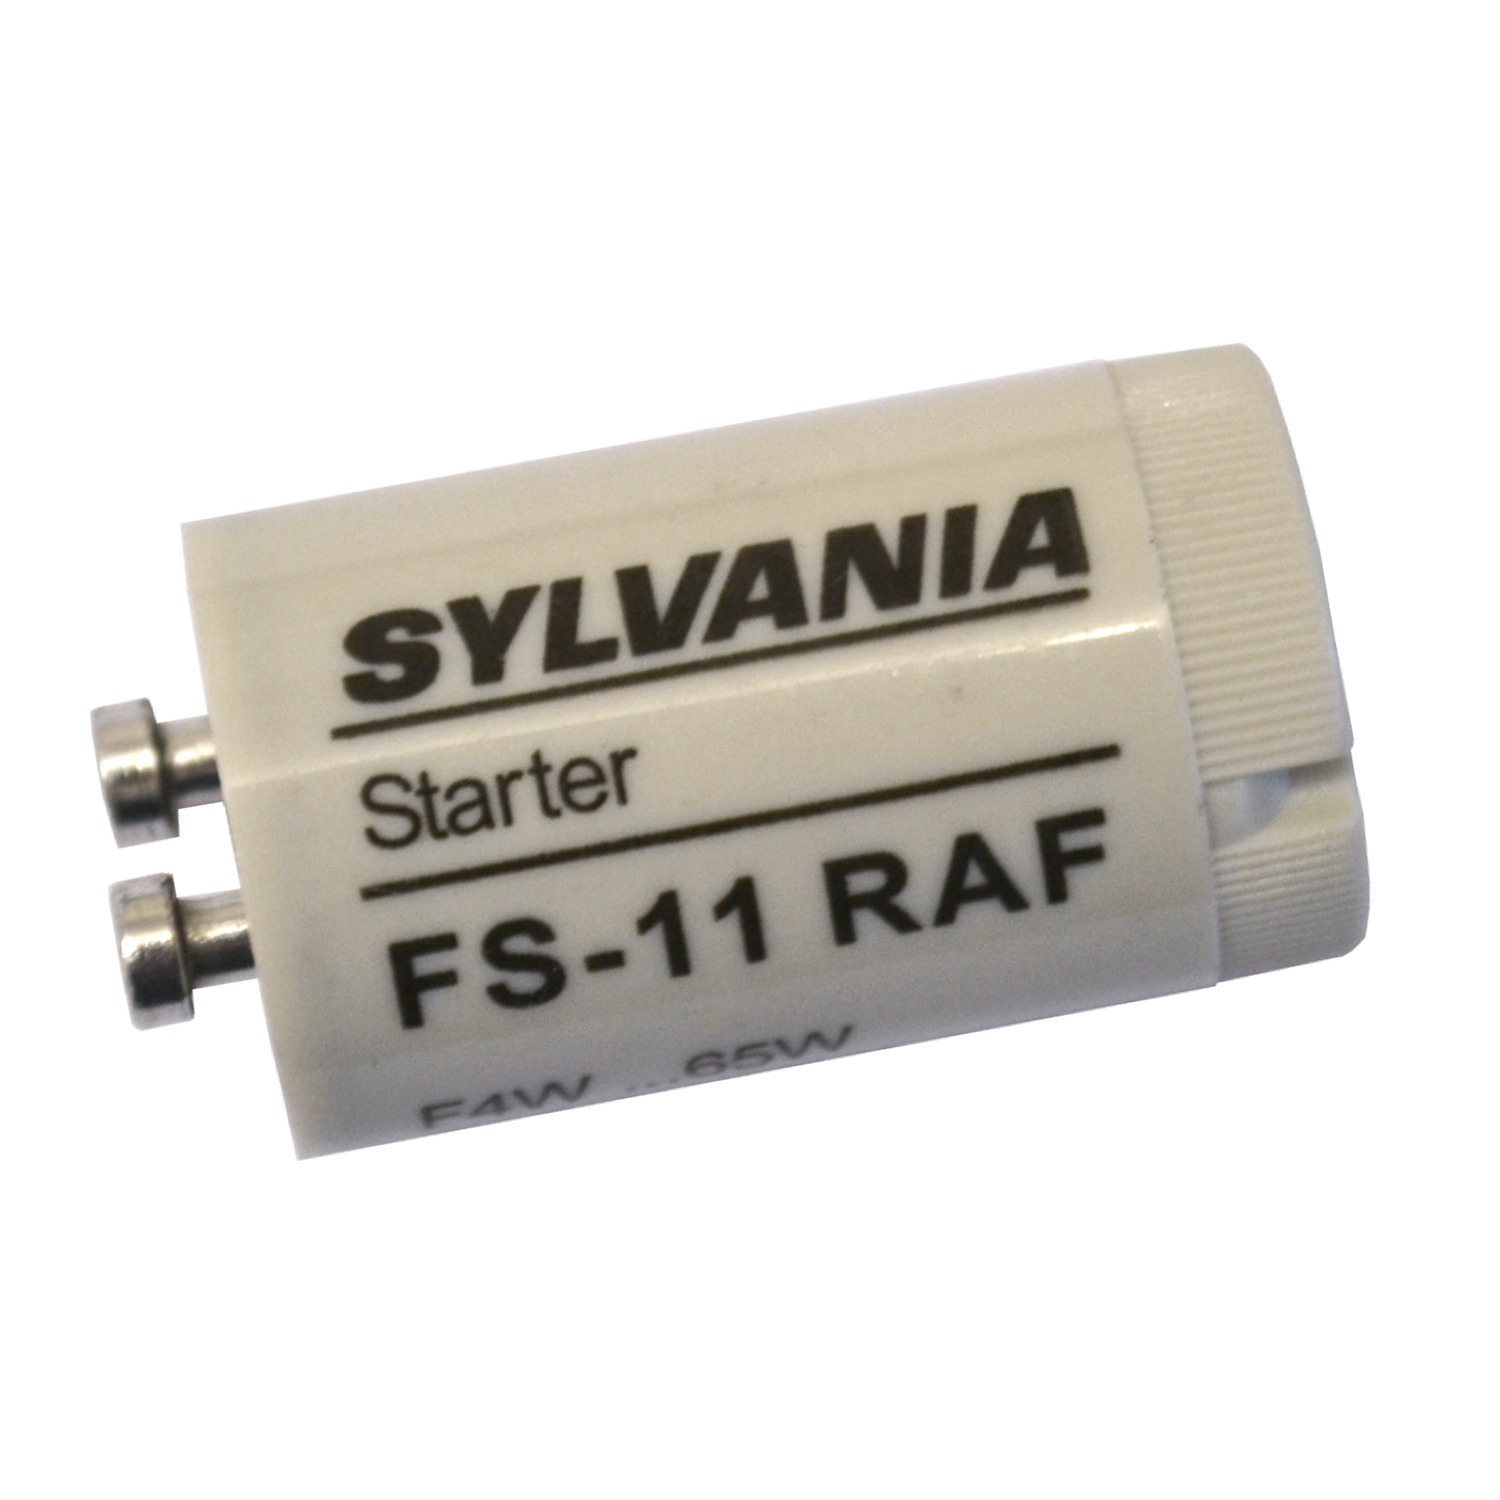 SYLVANIA FS-11 RAF starter pour tubes d\'éclairage T8 de 4W à 65W alimentés par un ballast ferromagnétique